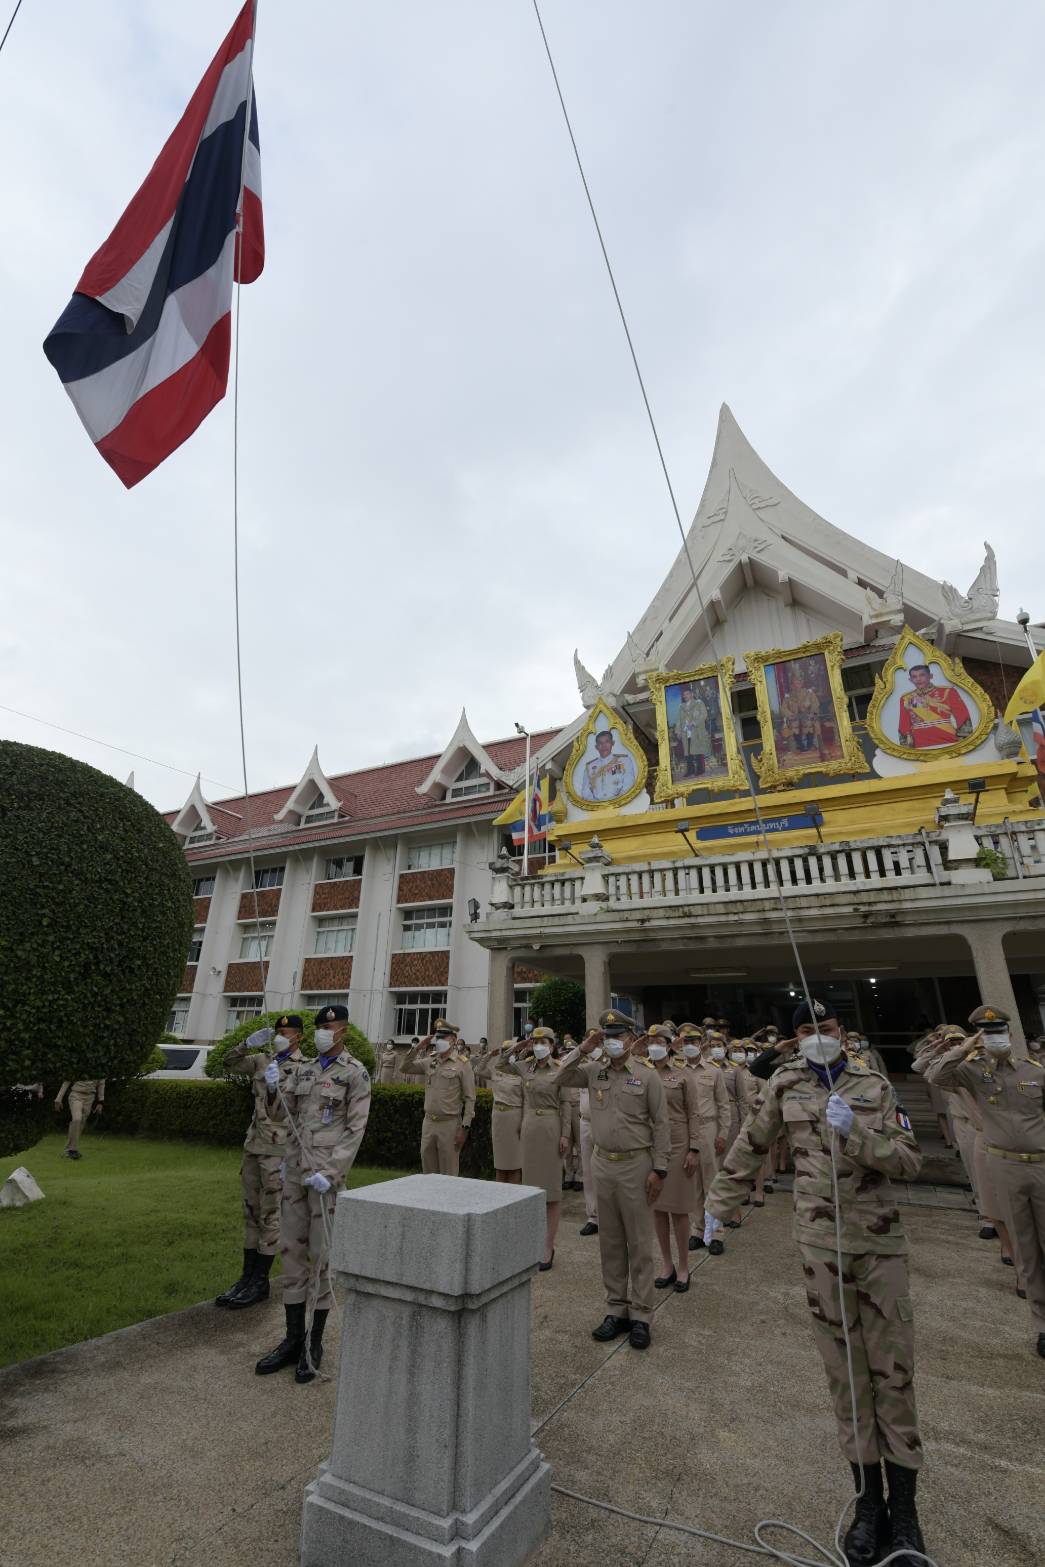 จังหวัดนนทบุรีได้จัดกิจกรรมเนื่องใน วันครบรอบ 106 ปี วันพระราชทานธงชาติไทย